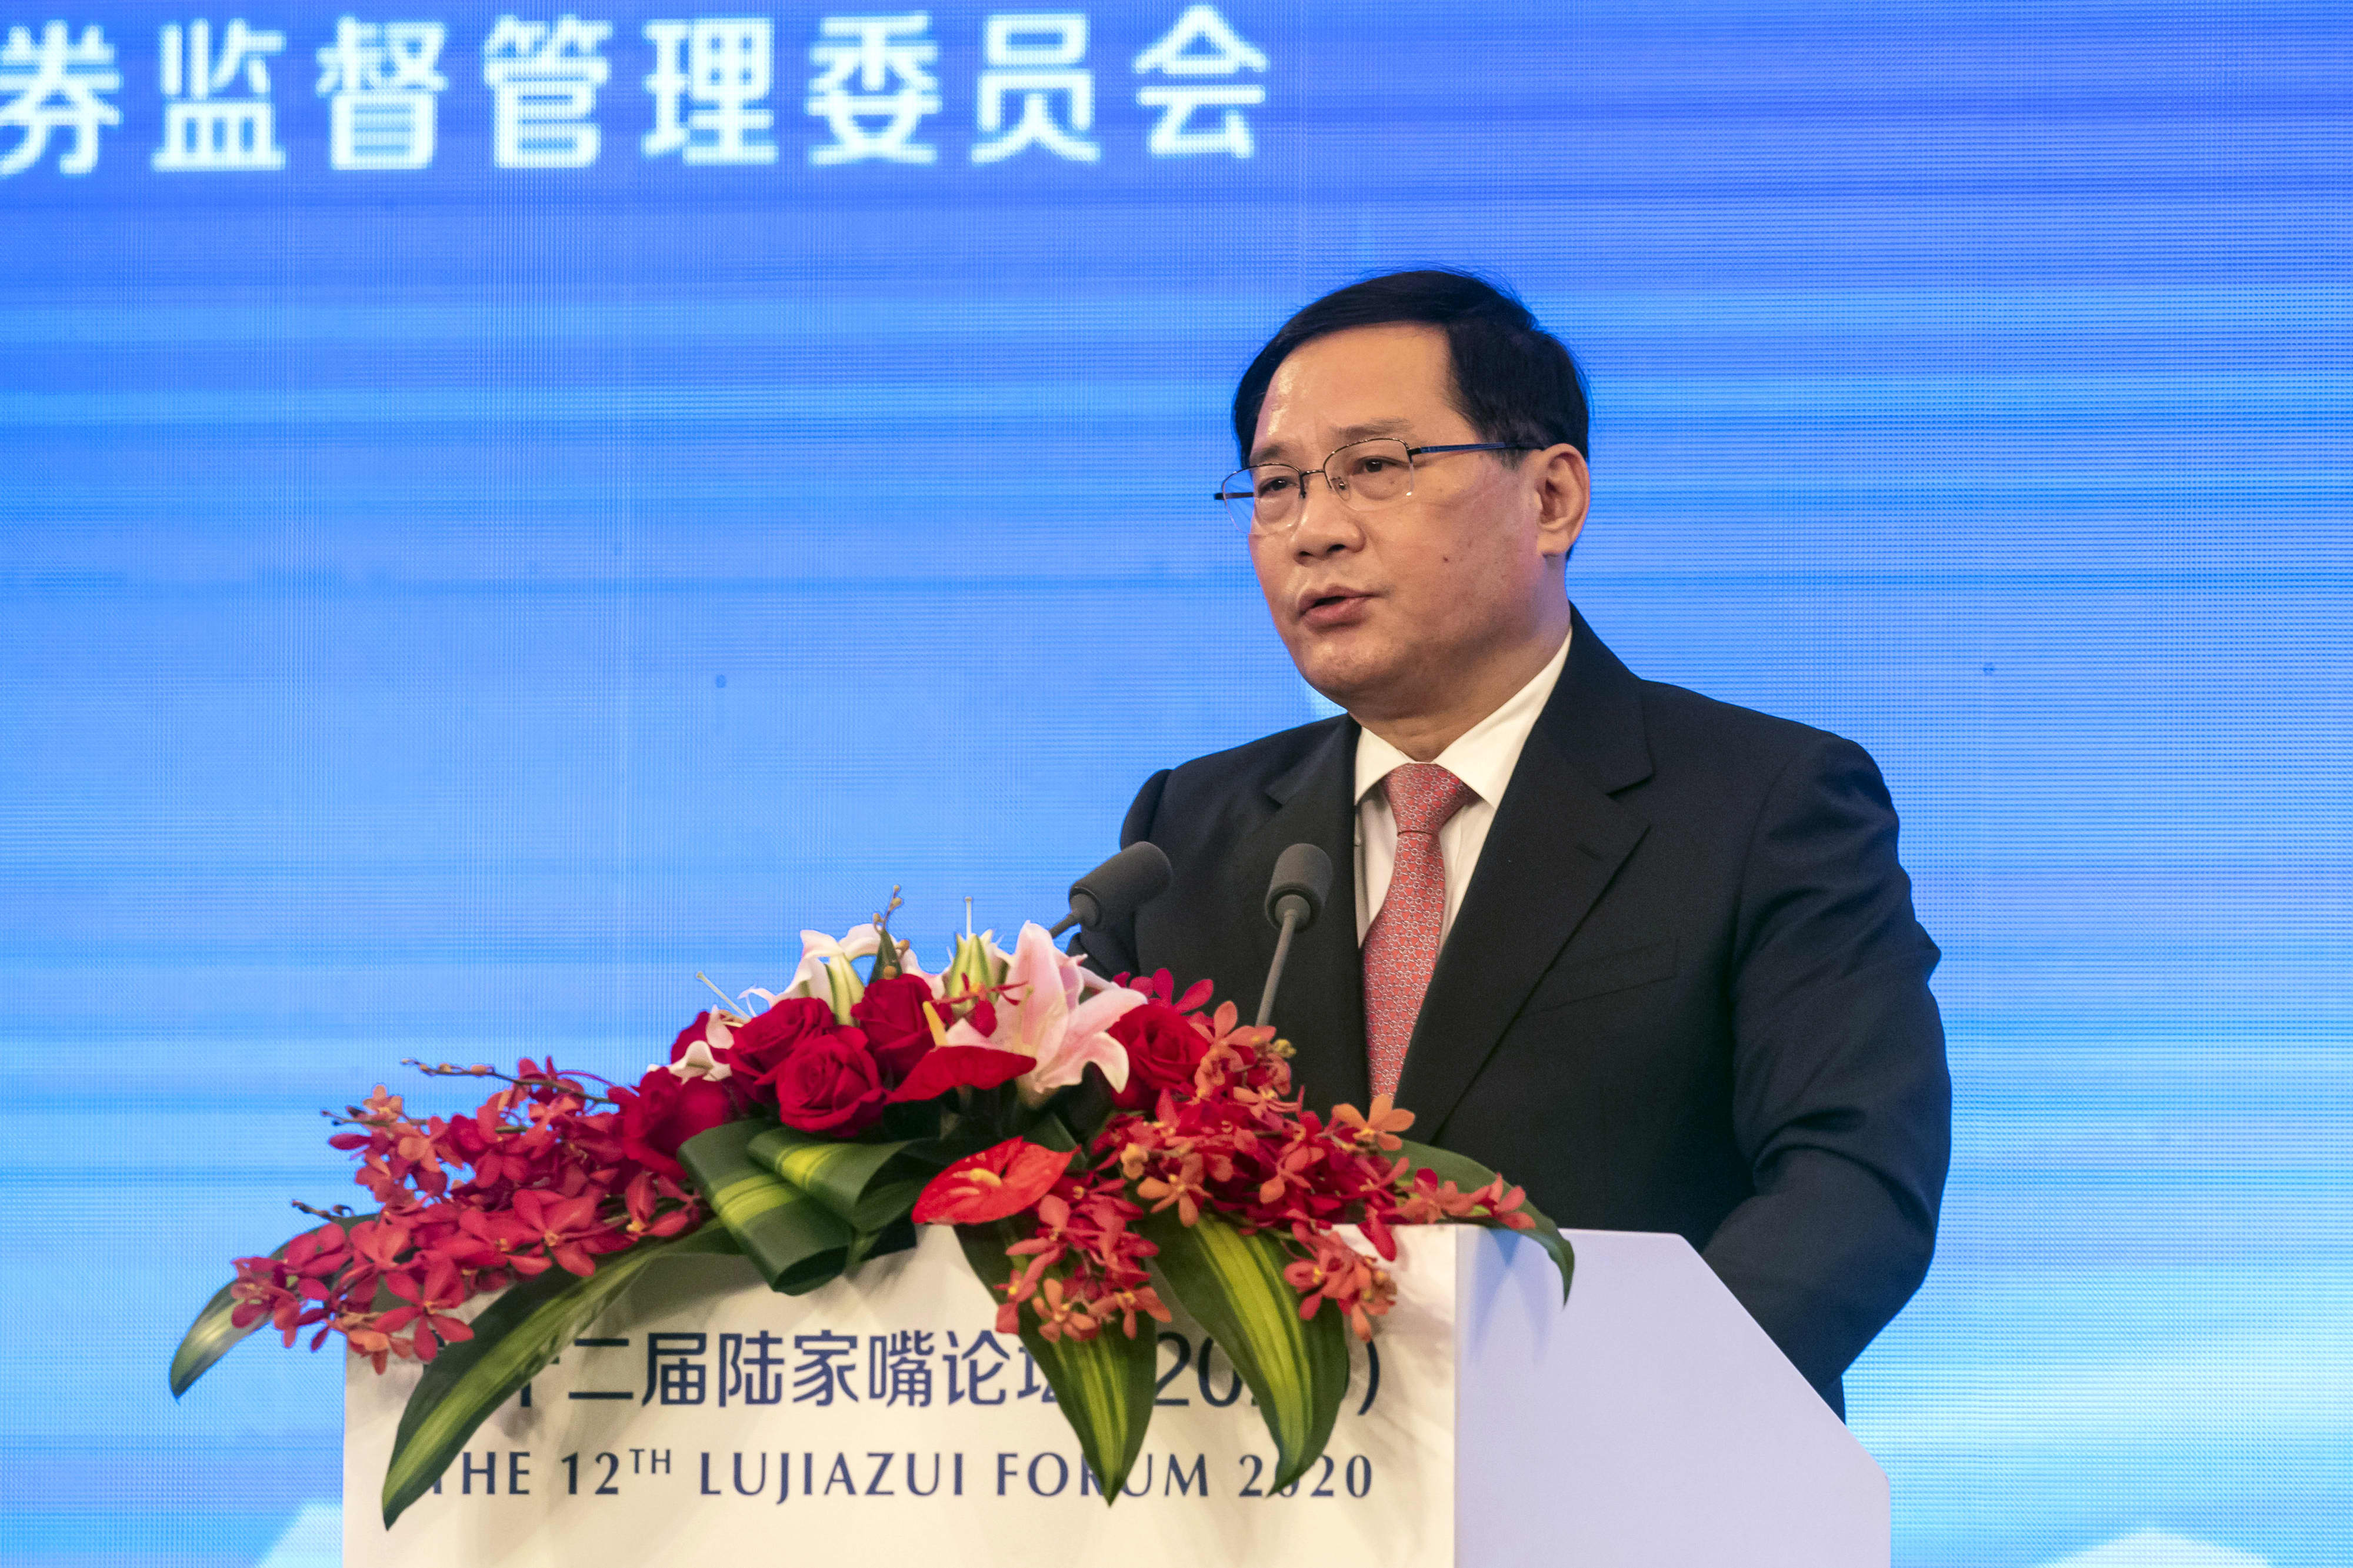 李强就任中国总理 着手恢复经济